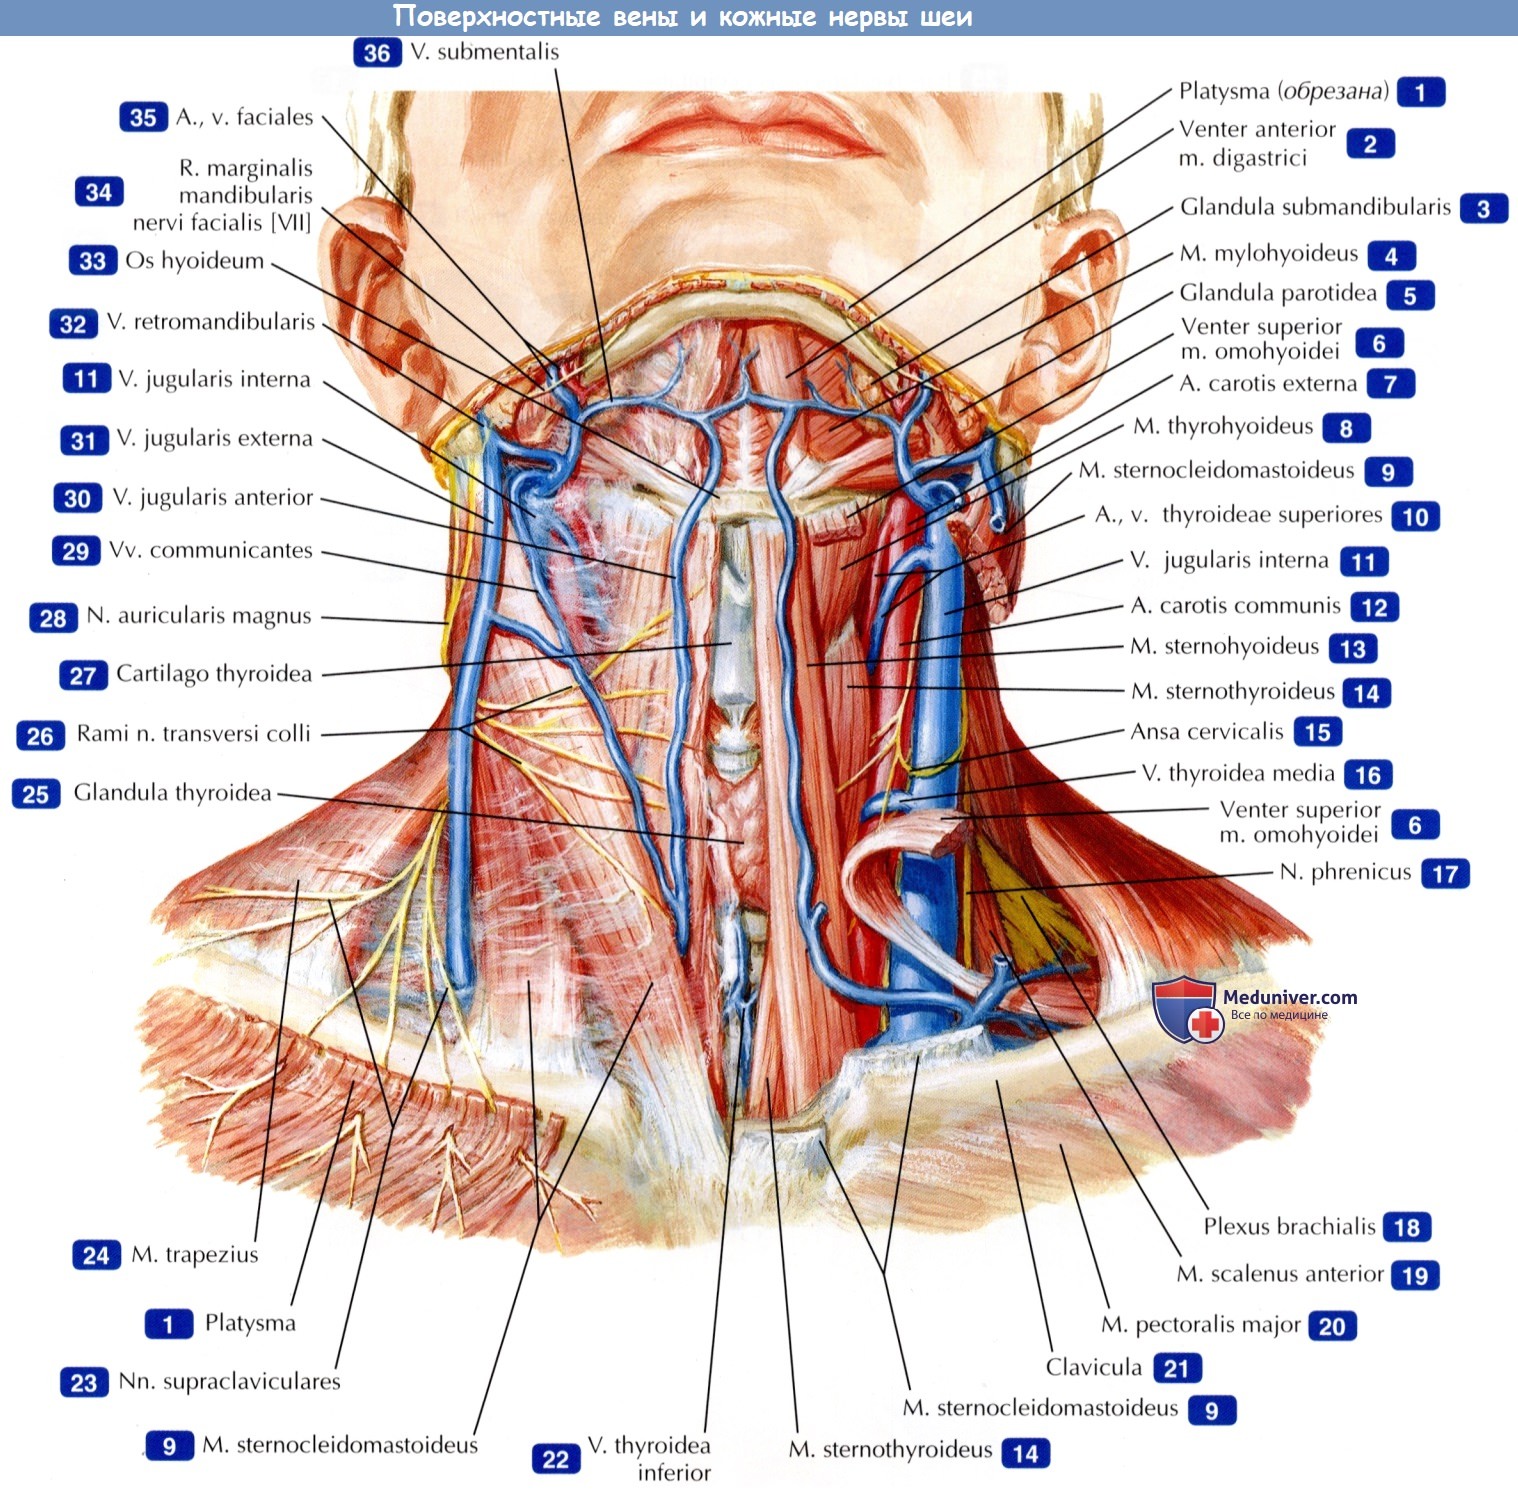 Поверхностные вены и кожные нервы шеи - по атласу анатомии